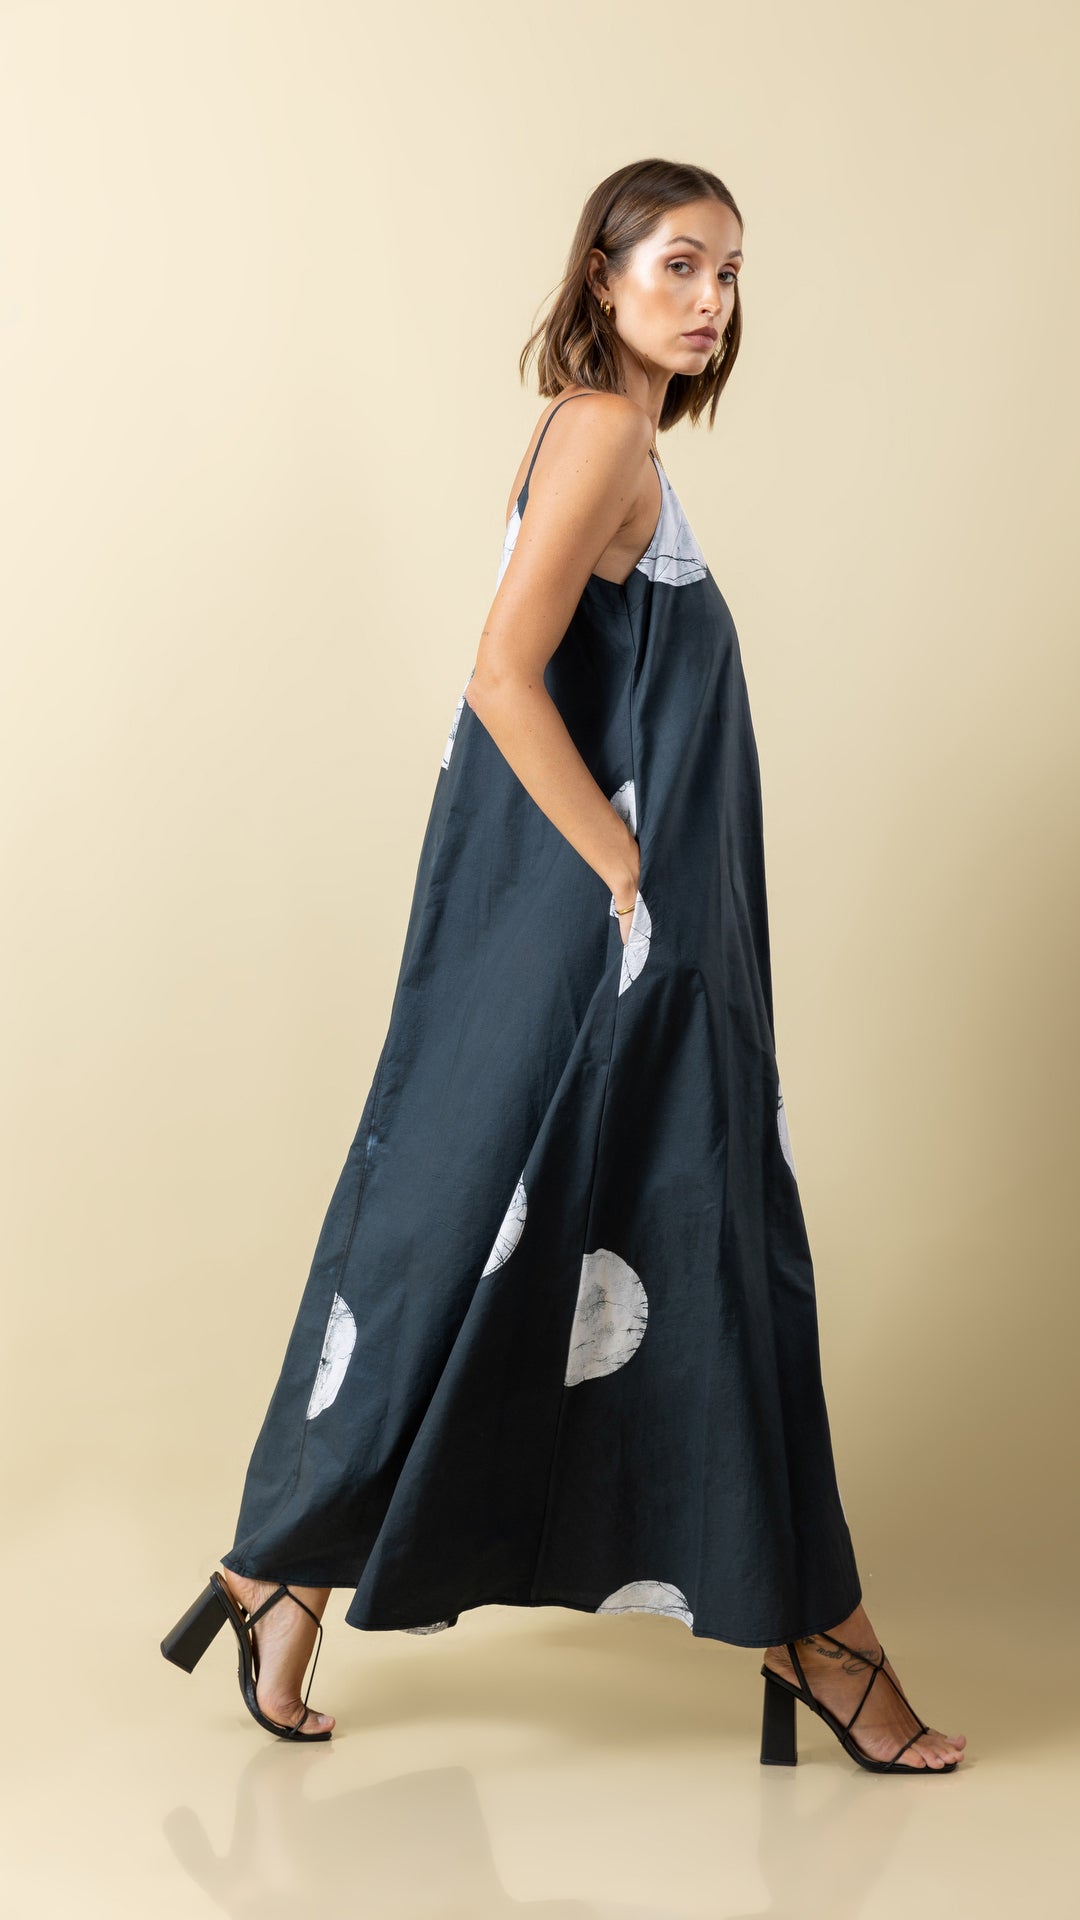 Black Polka Dot Perfection: Versatile Long Strap Dress